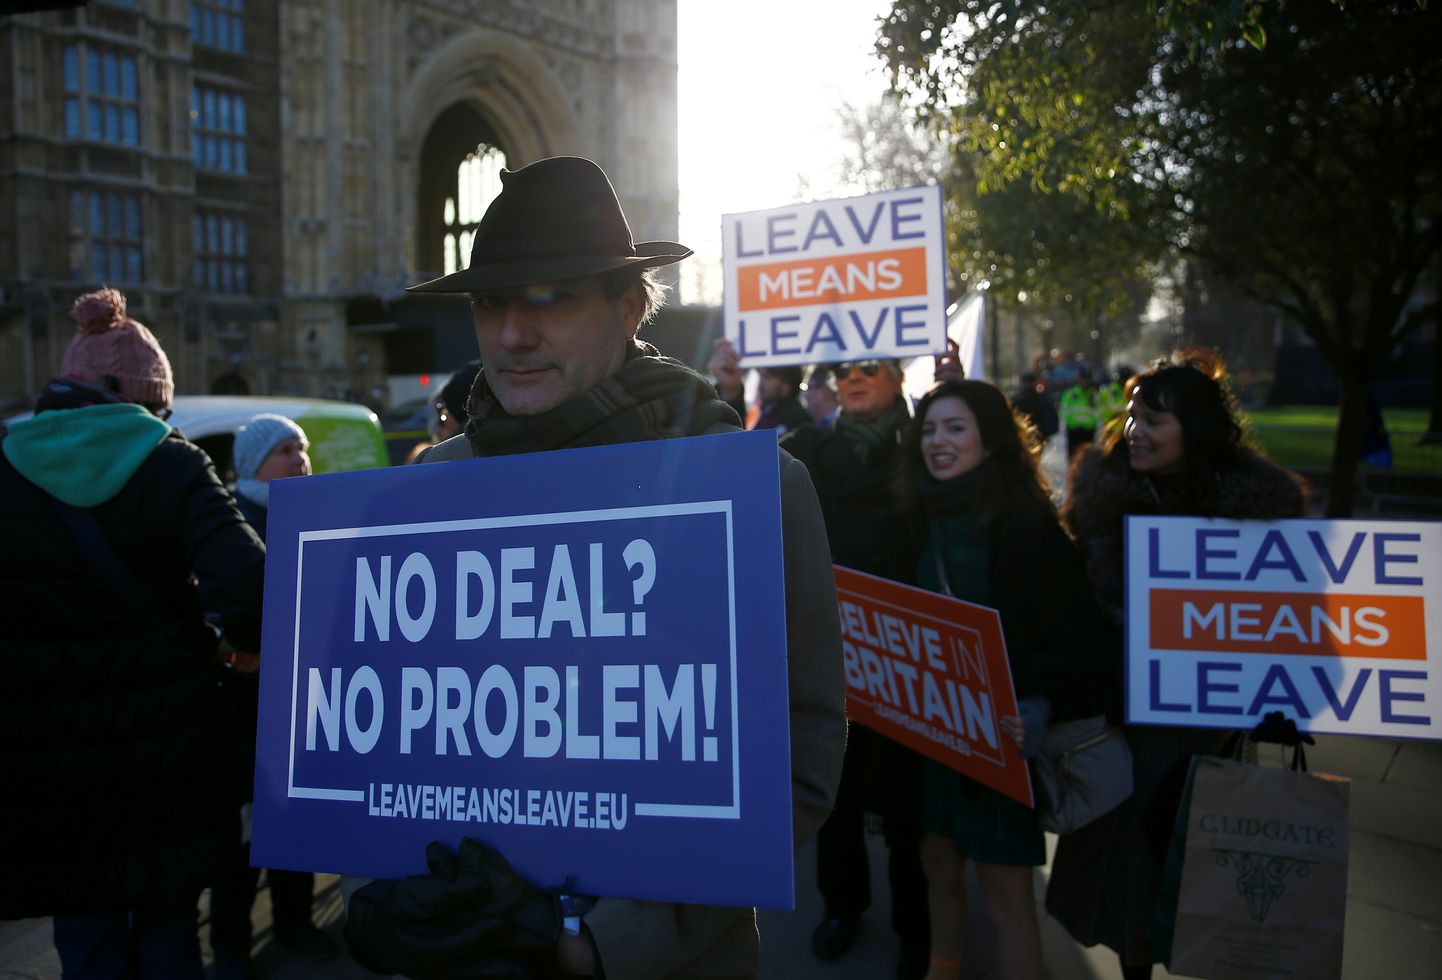 Täna kogunesid Suurbritannia parlamendi juurde meeleavaldajad, kes ei pea leppeta lahkumist probleemiks.